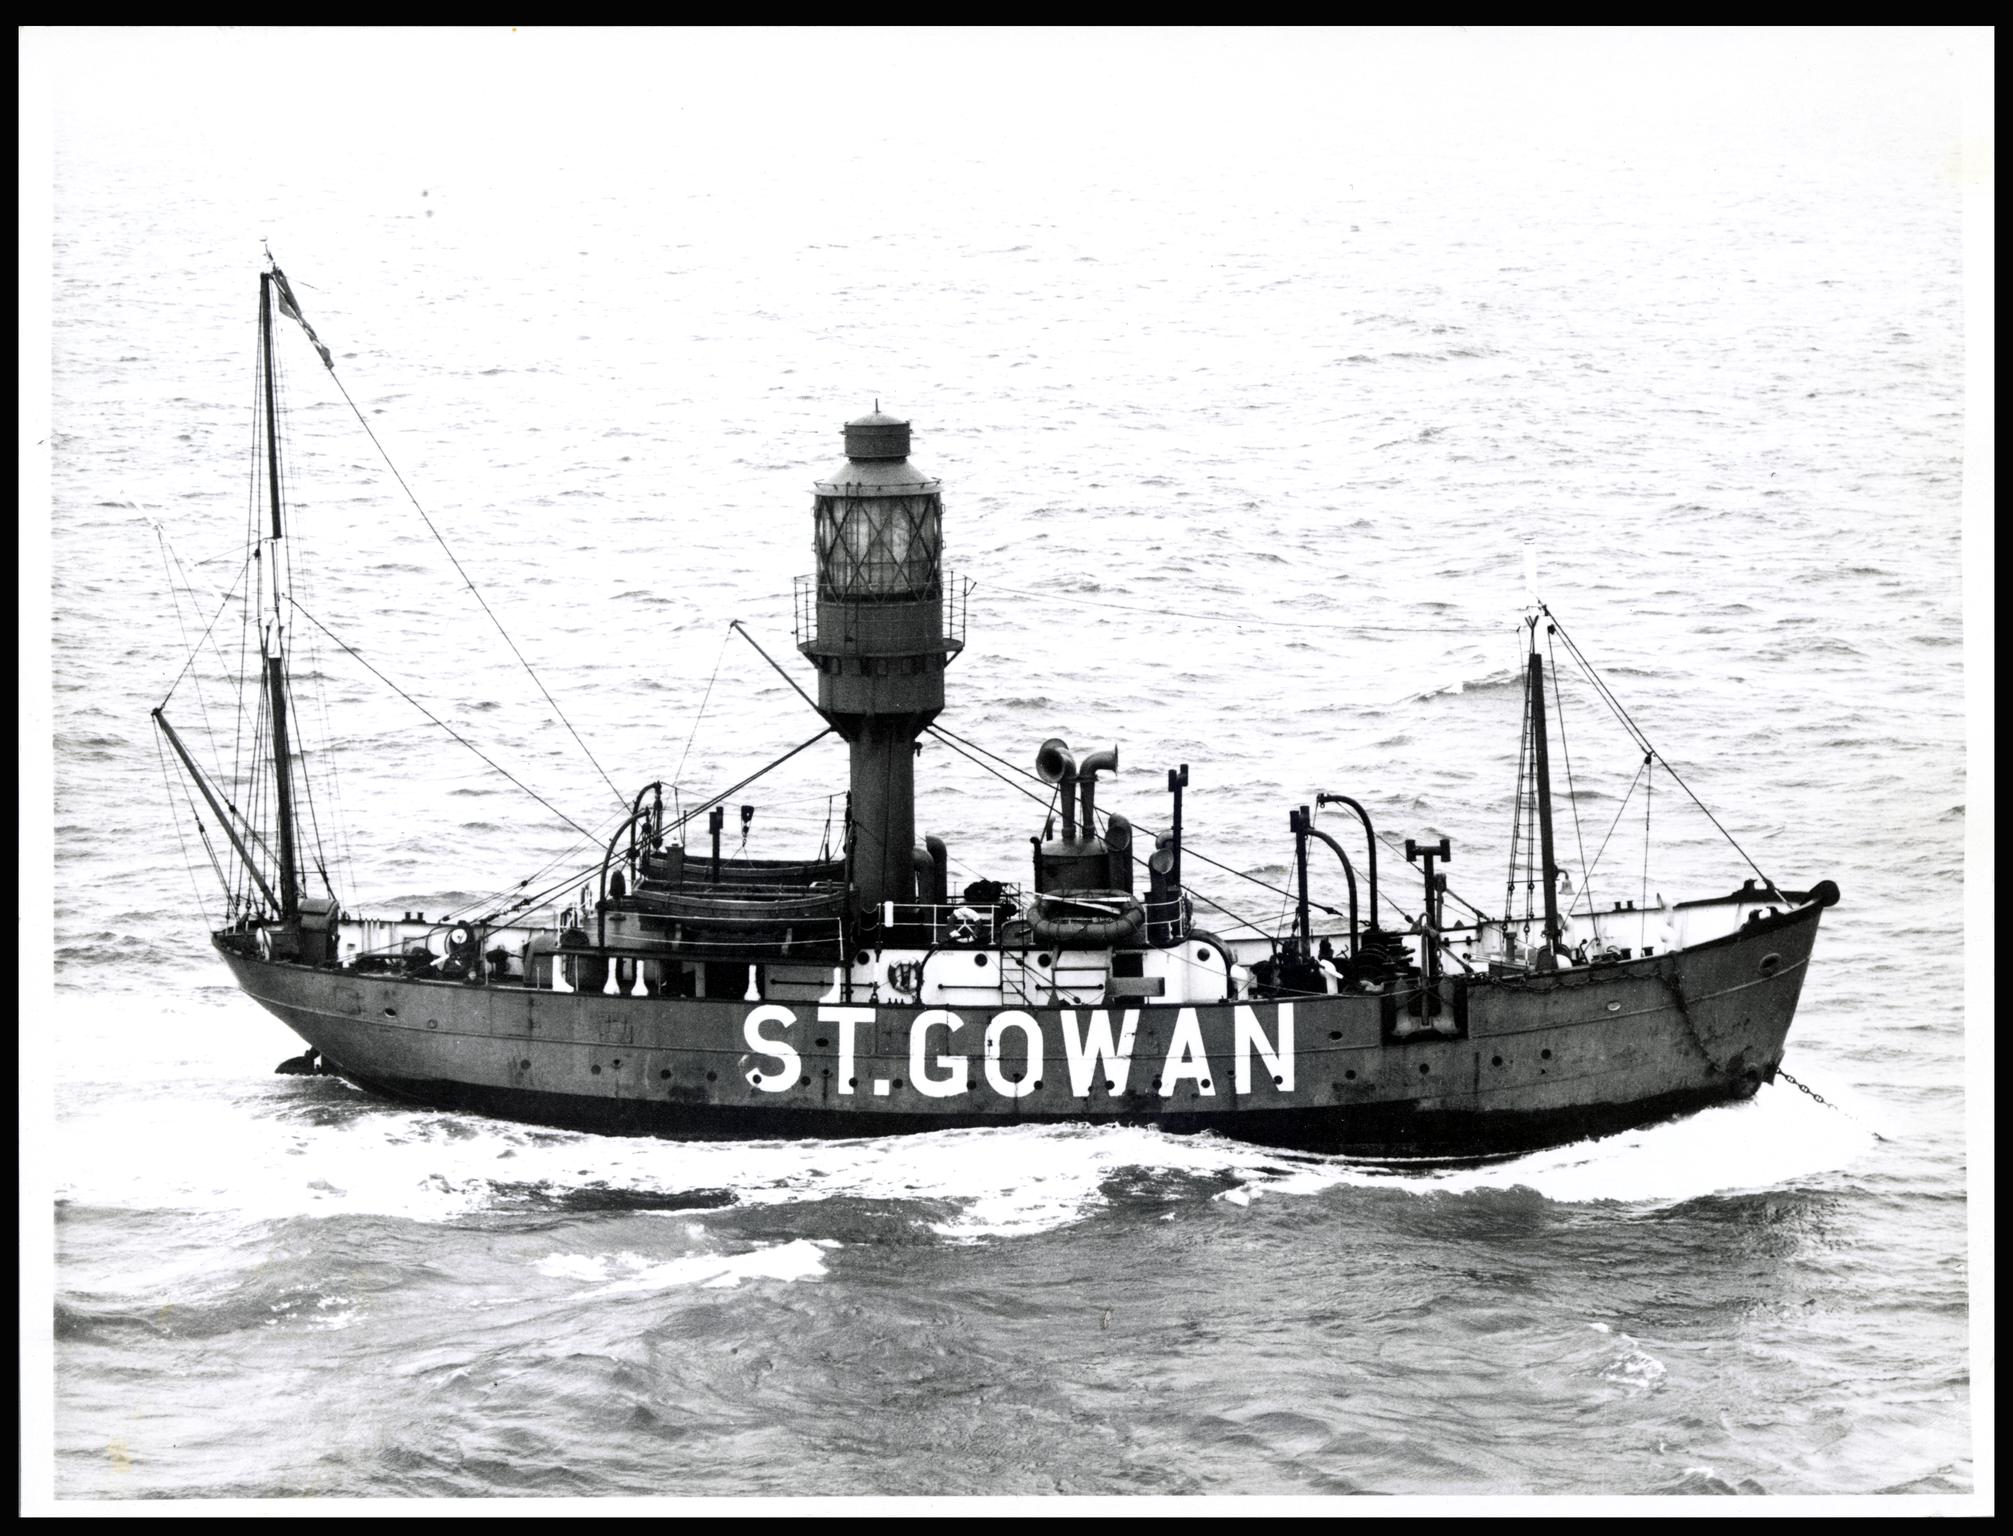 ST. GOWAN light vessel, photograph